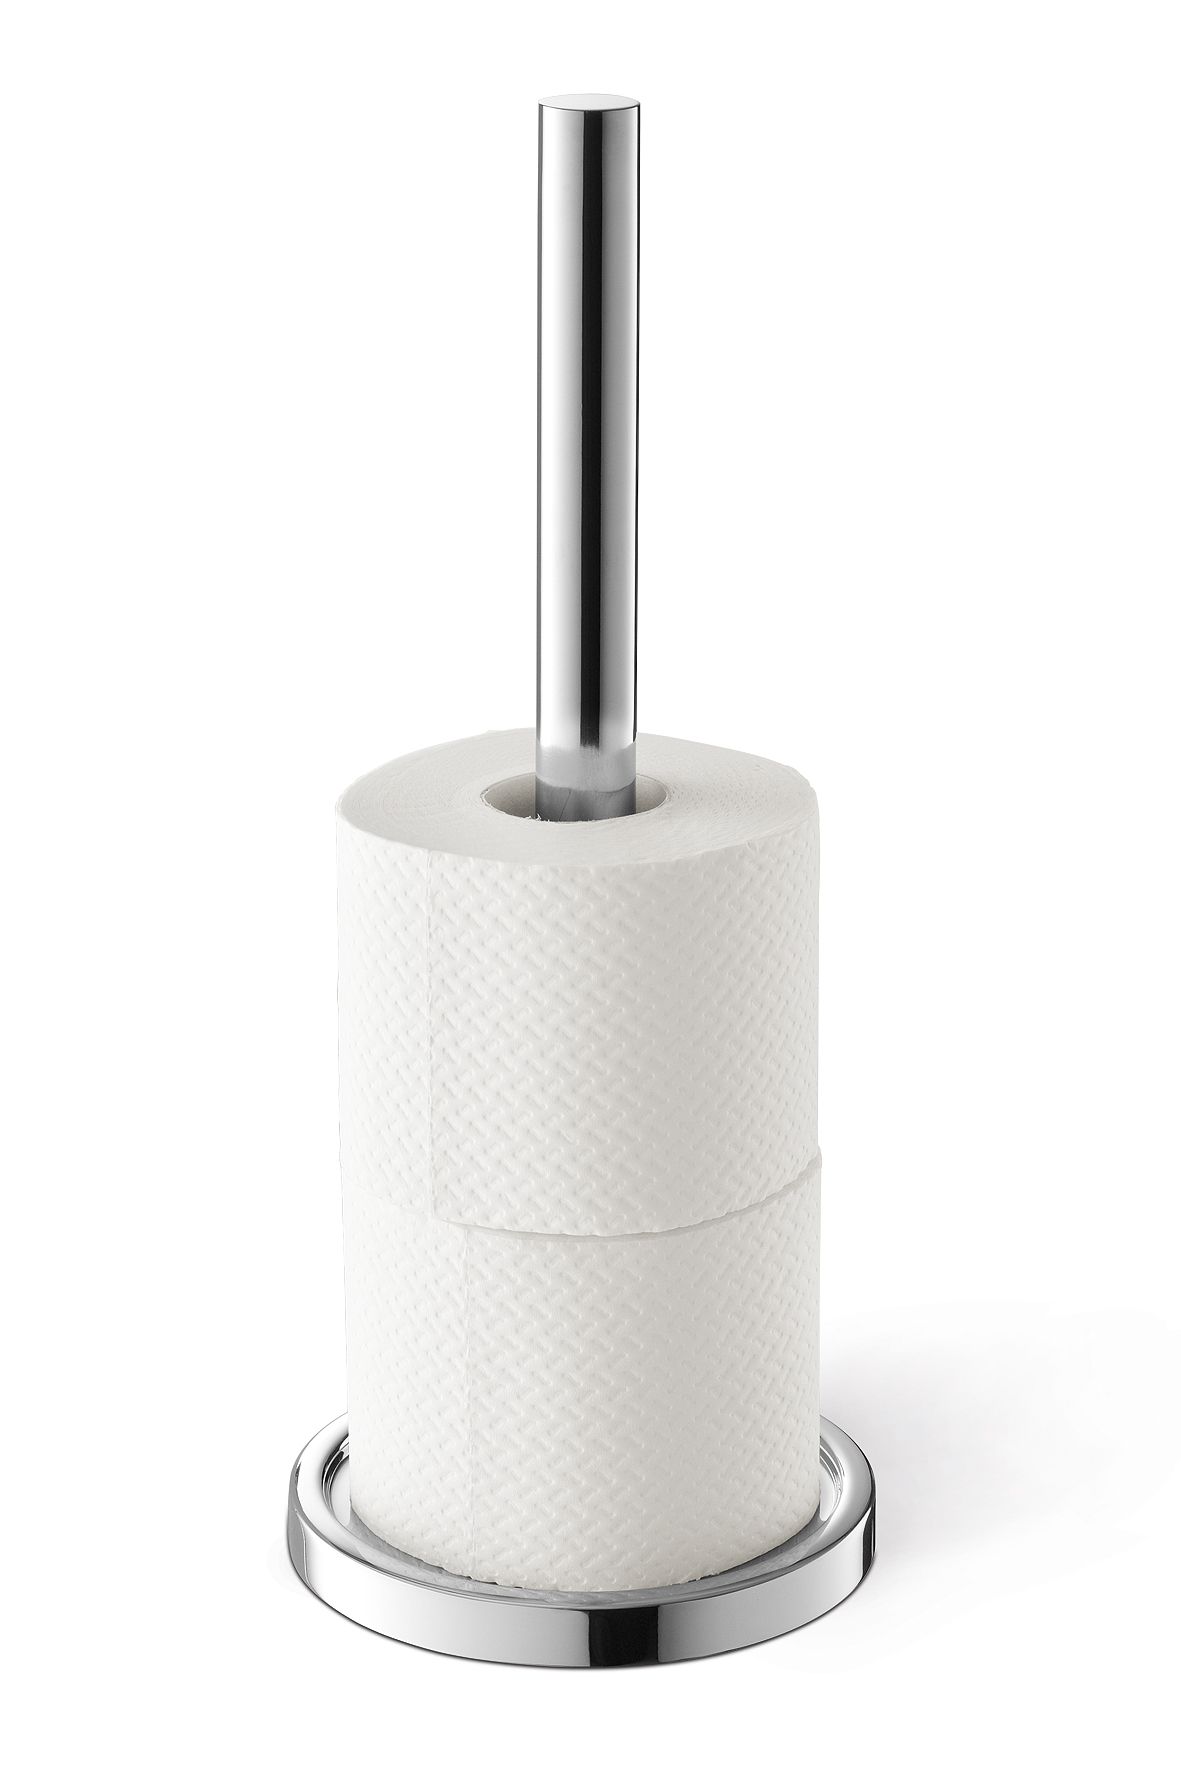 Un microphone à partir d'un tube de papier toilette - Cabane à